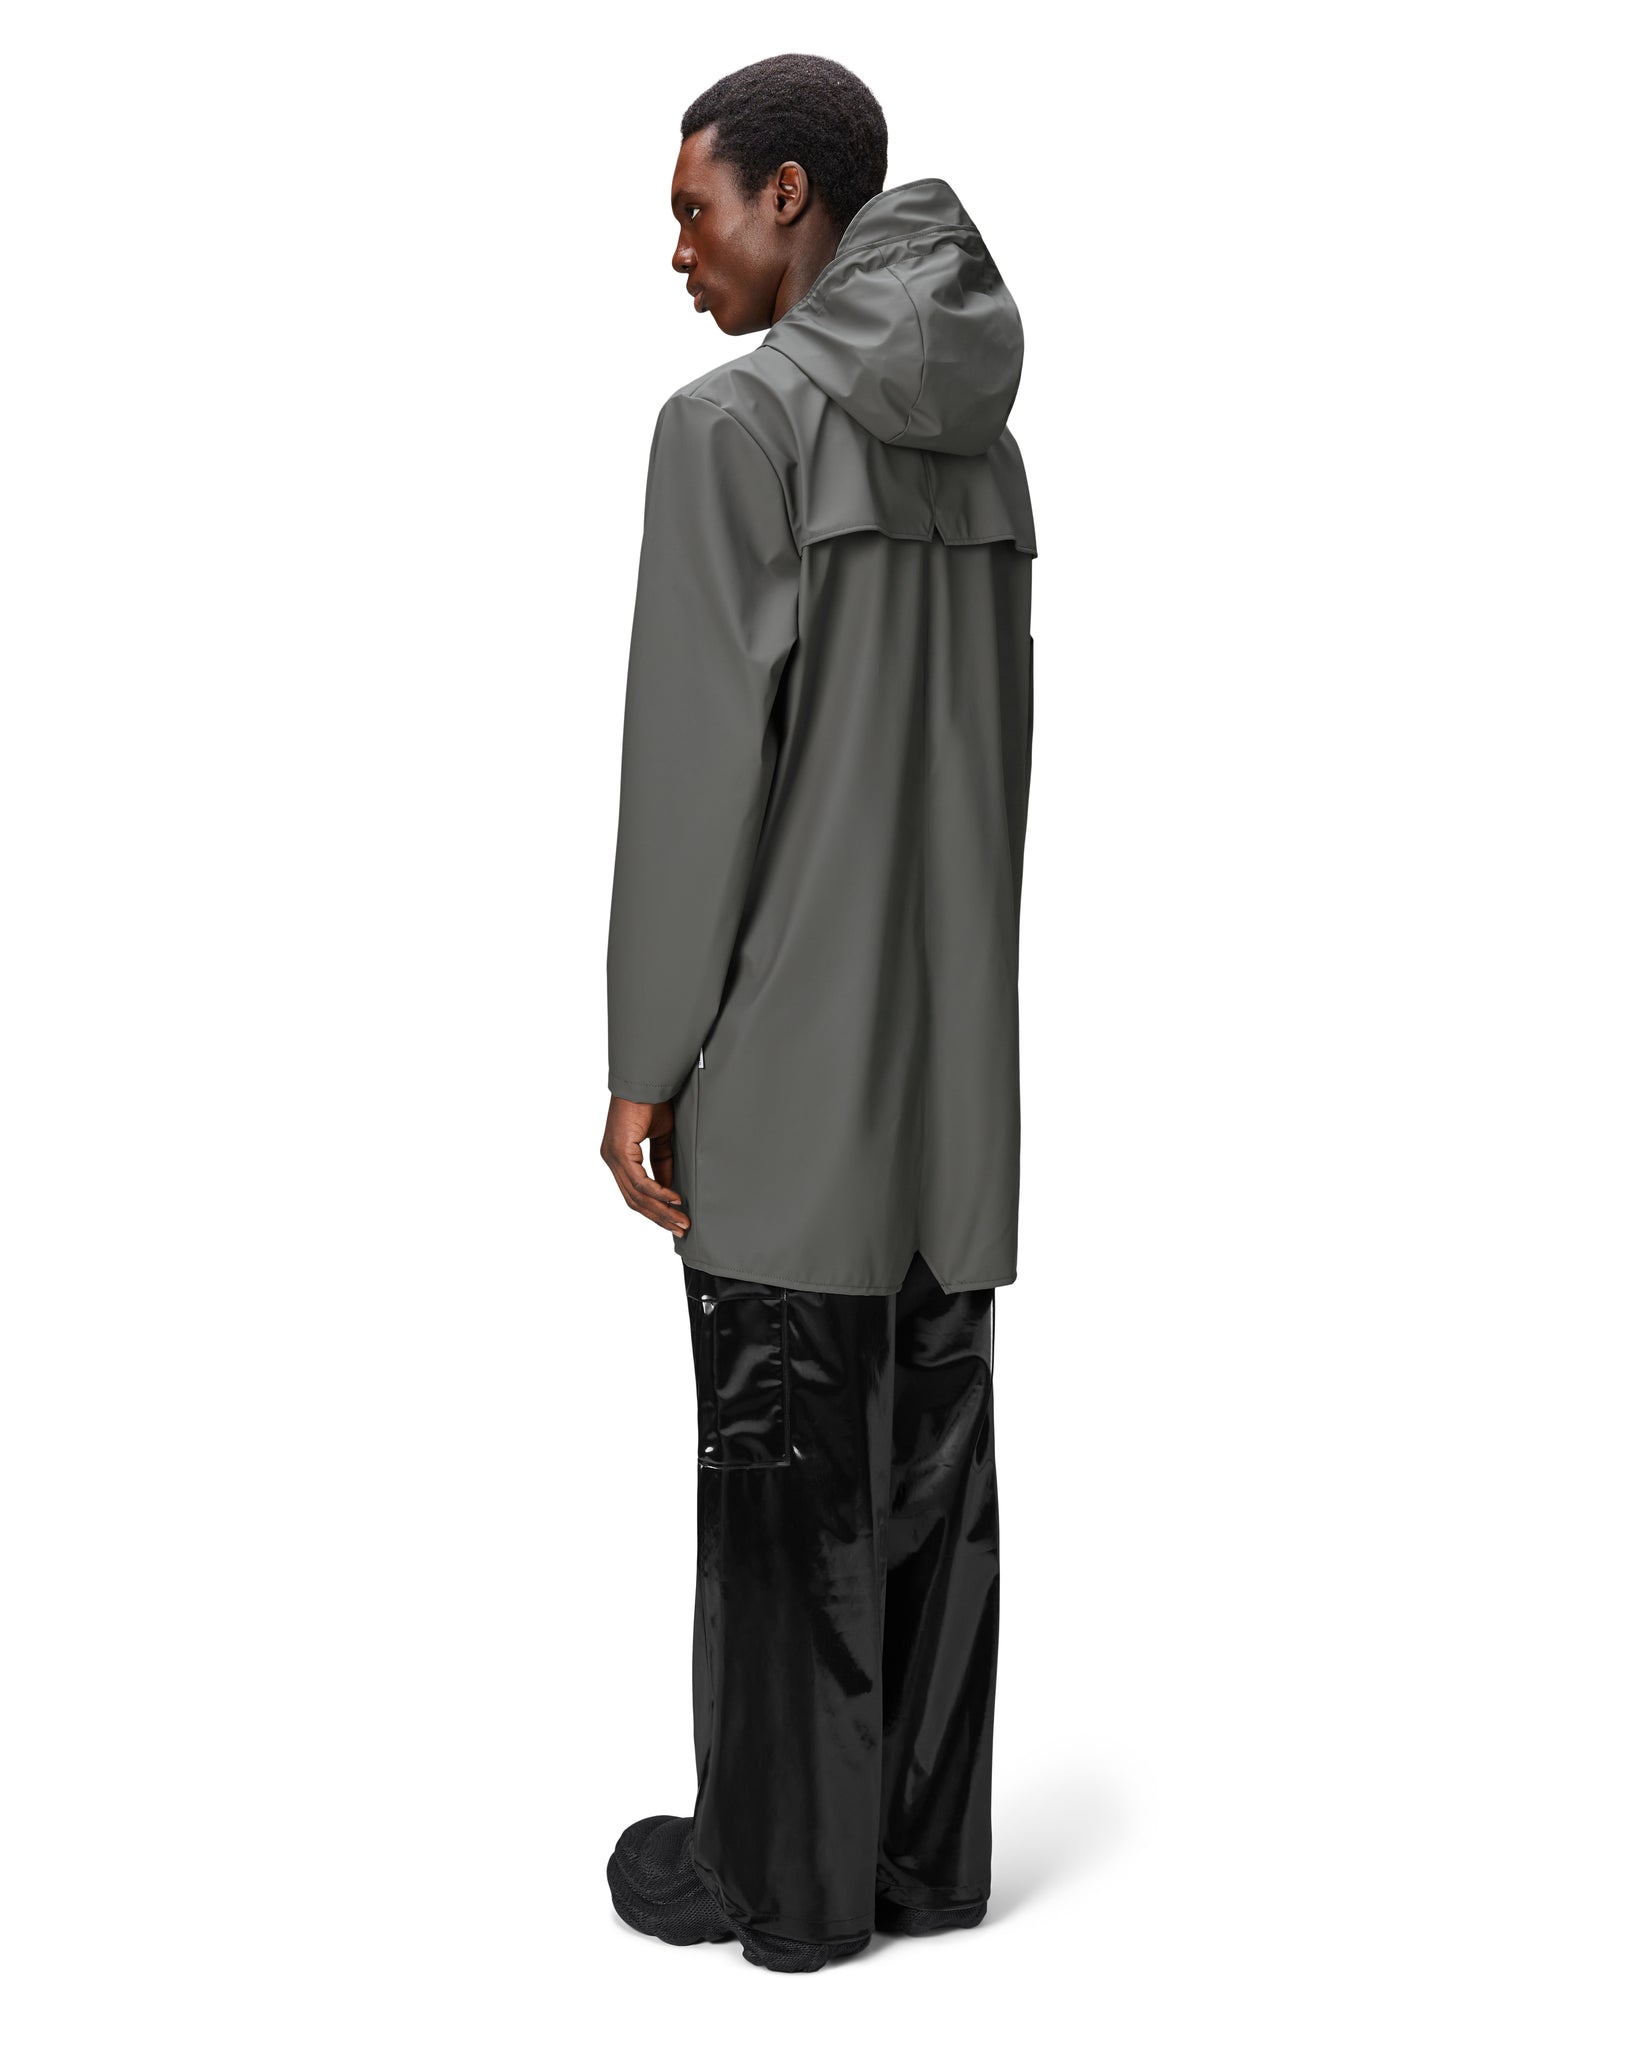 Chubasquero Long Jacket - Grey (Unisex)